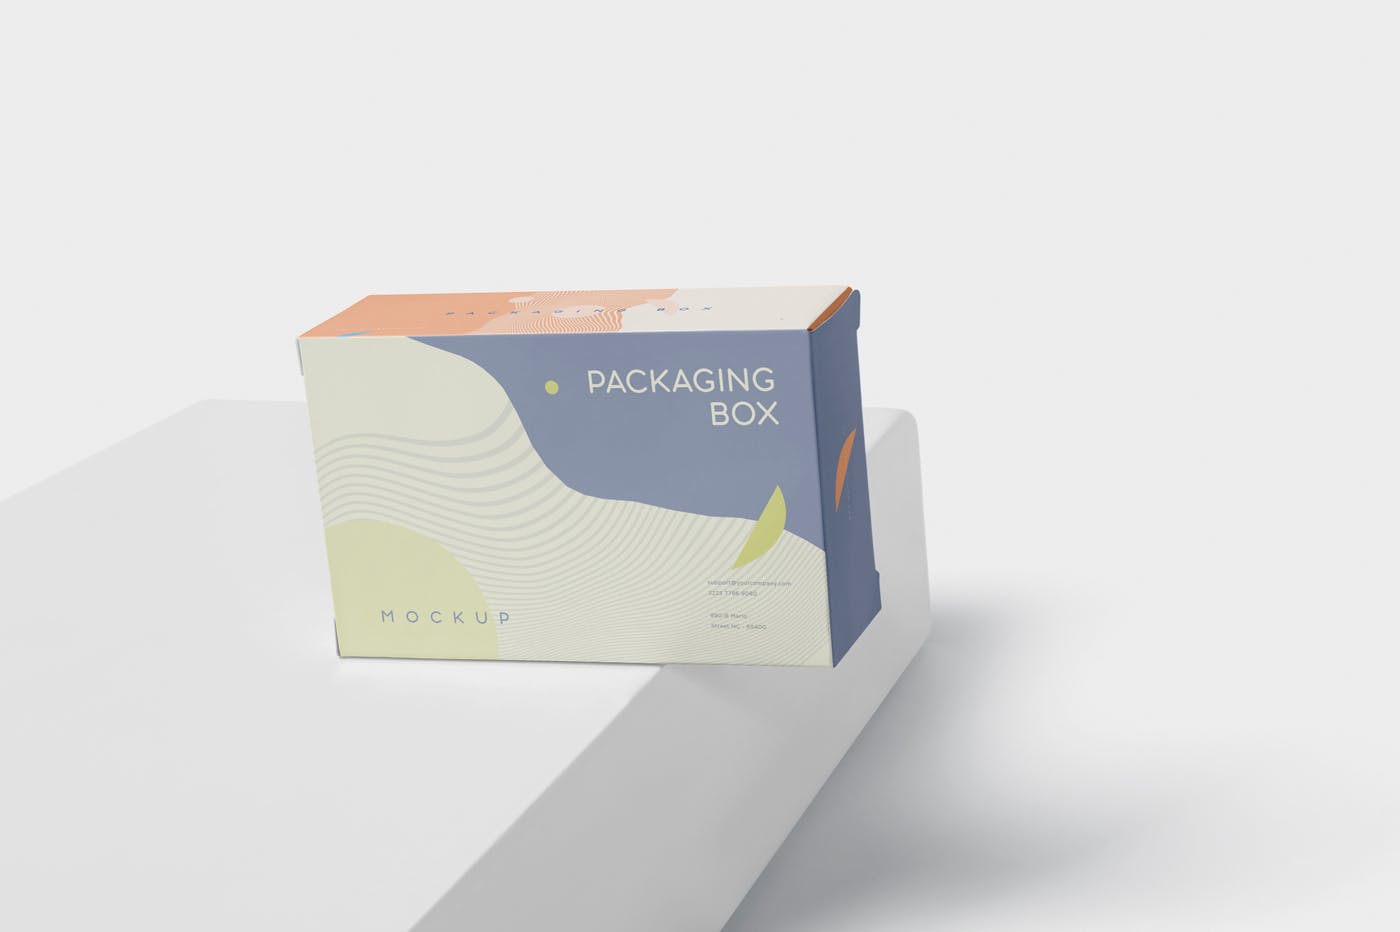 扁平矩形产品包装盒效果图第一素材精选 Package Box Mockup – Slim Rectangle Shape插图(4)